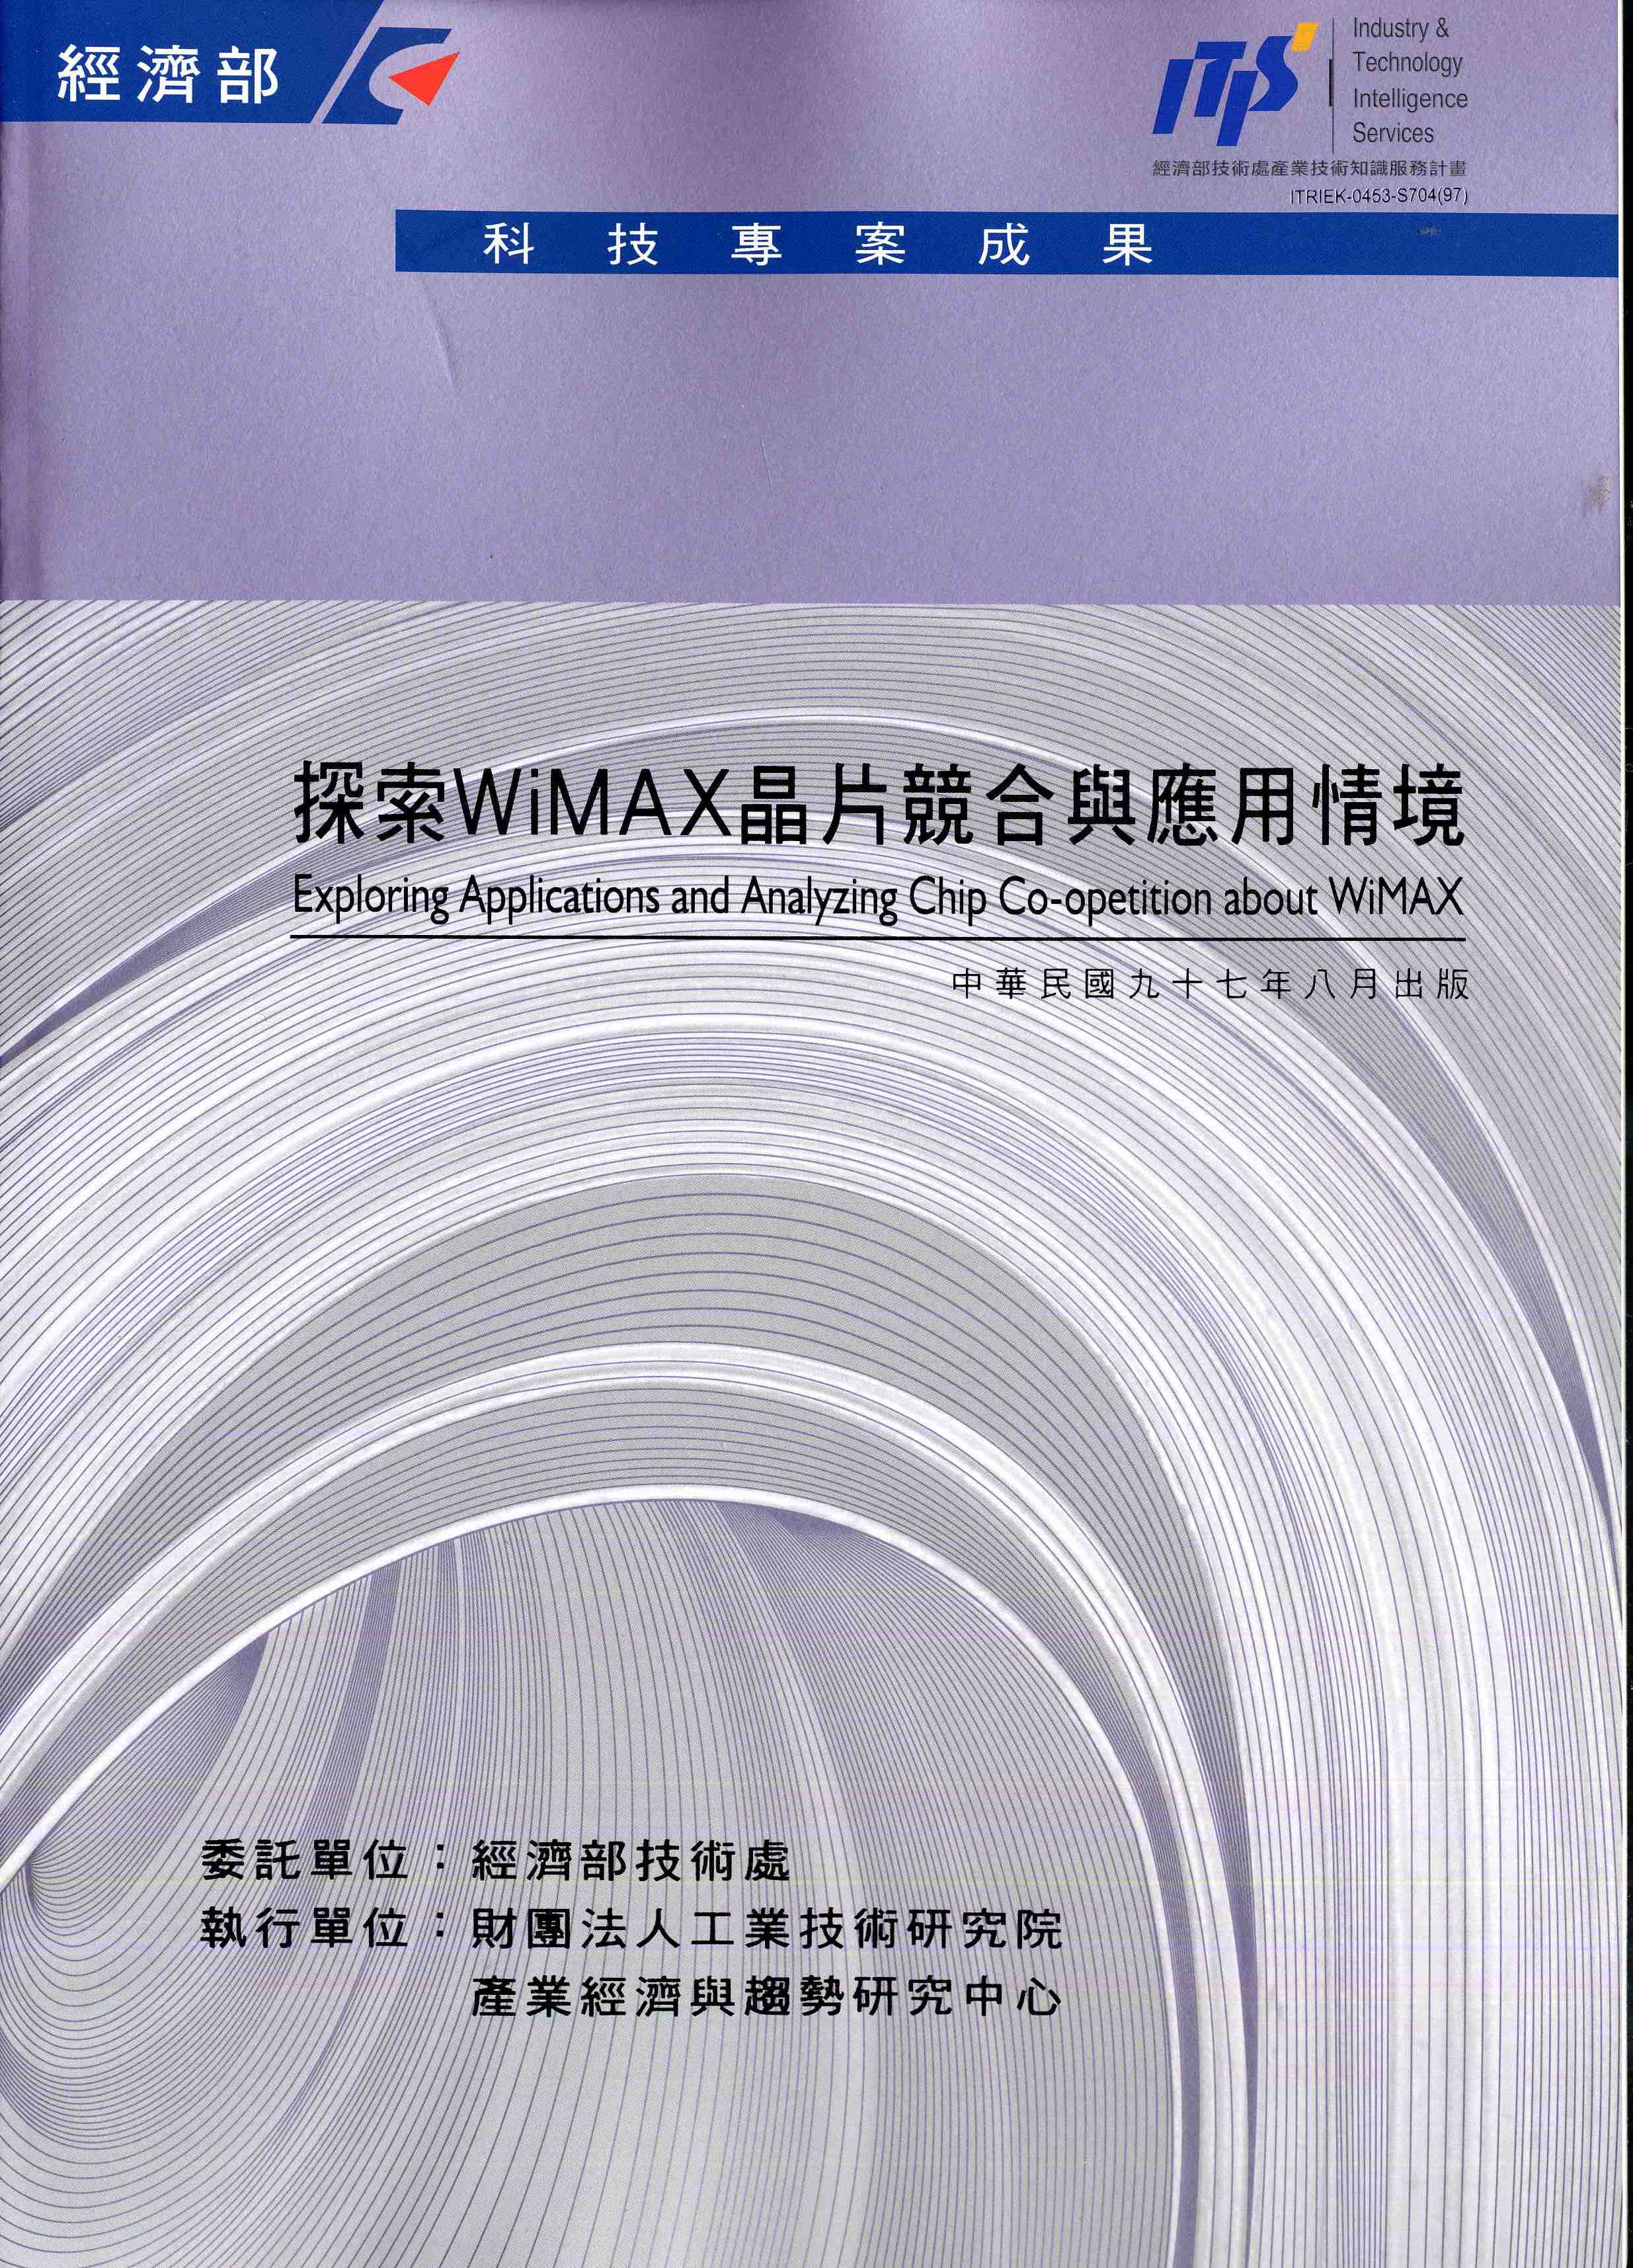 探索WiMAX晶片競合與應用情境